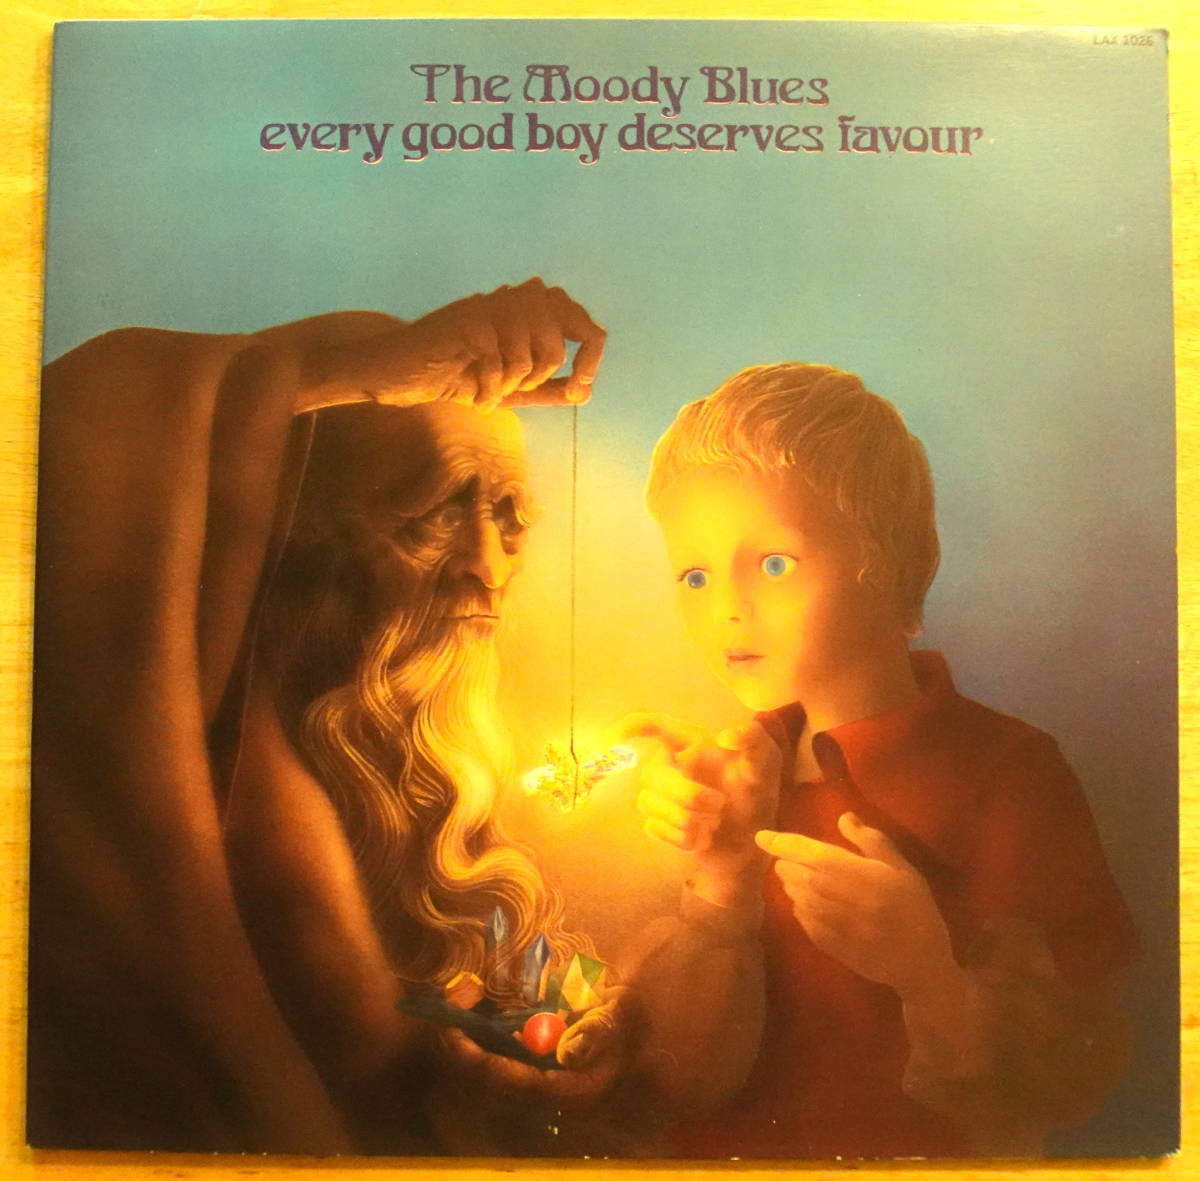 【 国内盤 見開き】1978年 THE MOODY BLUES / EVERY GOOD BOY DESERVES FAVOUR 童夢 LAX 1026 ■試聴済み■_画像1